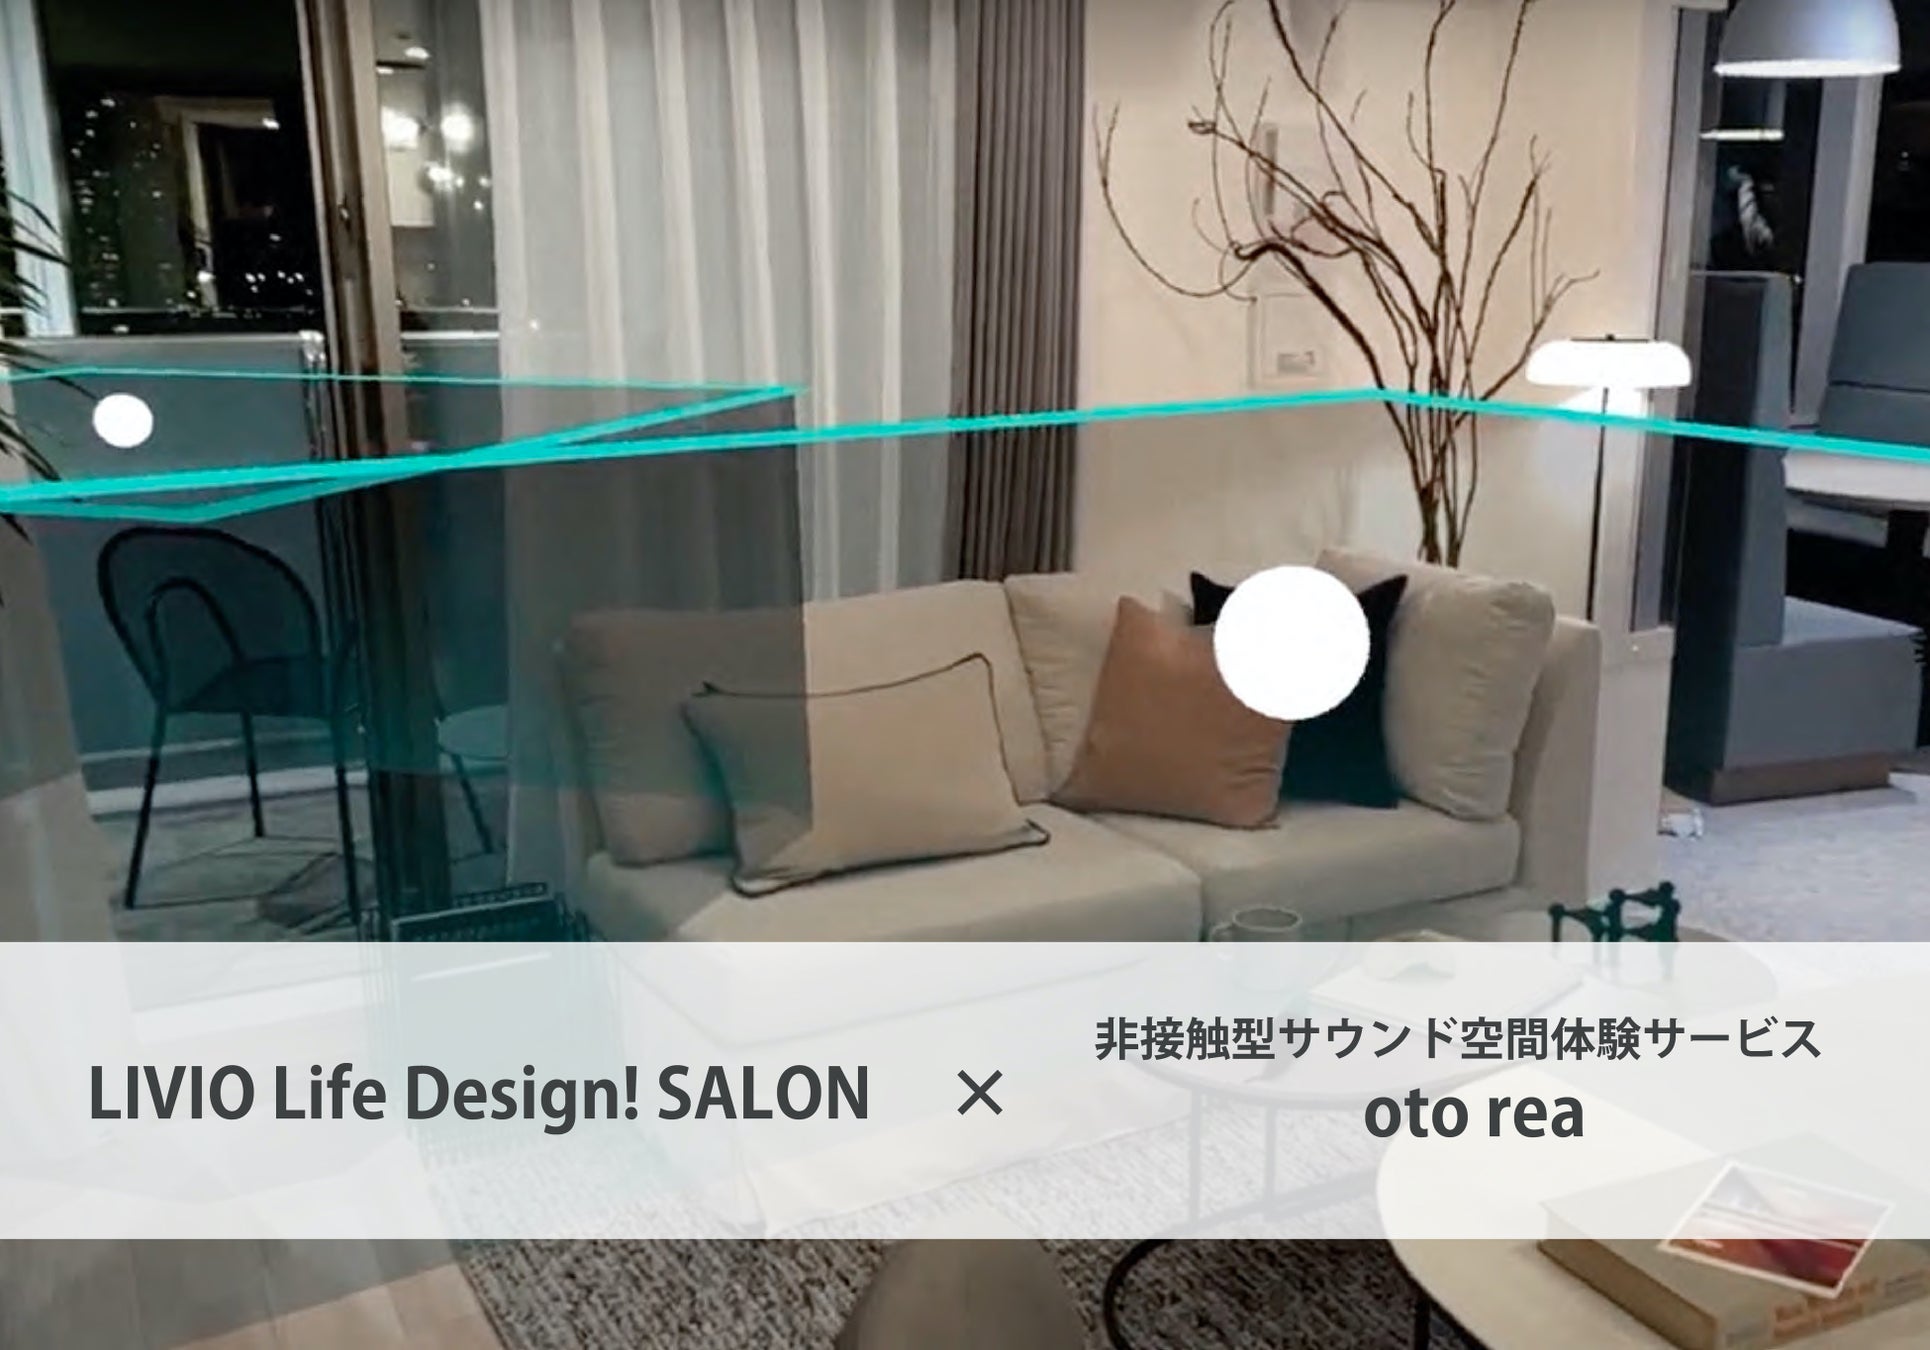 日鉄興和不動産の「LIVIO Life Design! SALON」内マンションモデルルームに、GATARIと乃村工藝社が共同で提供する「oto rea」を導入のサブ画像1